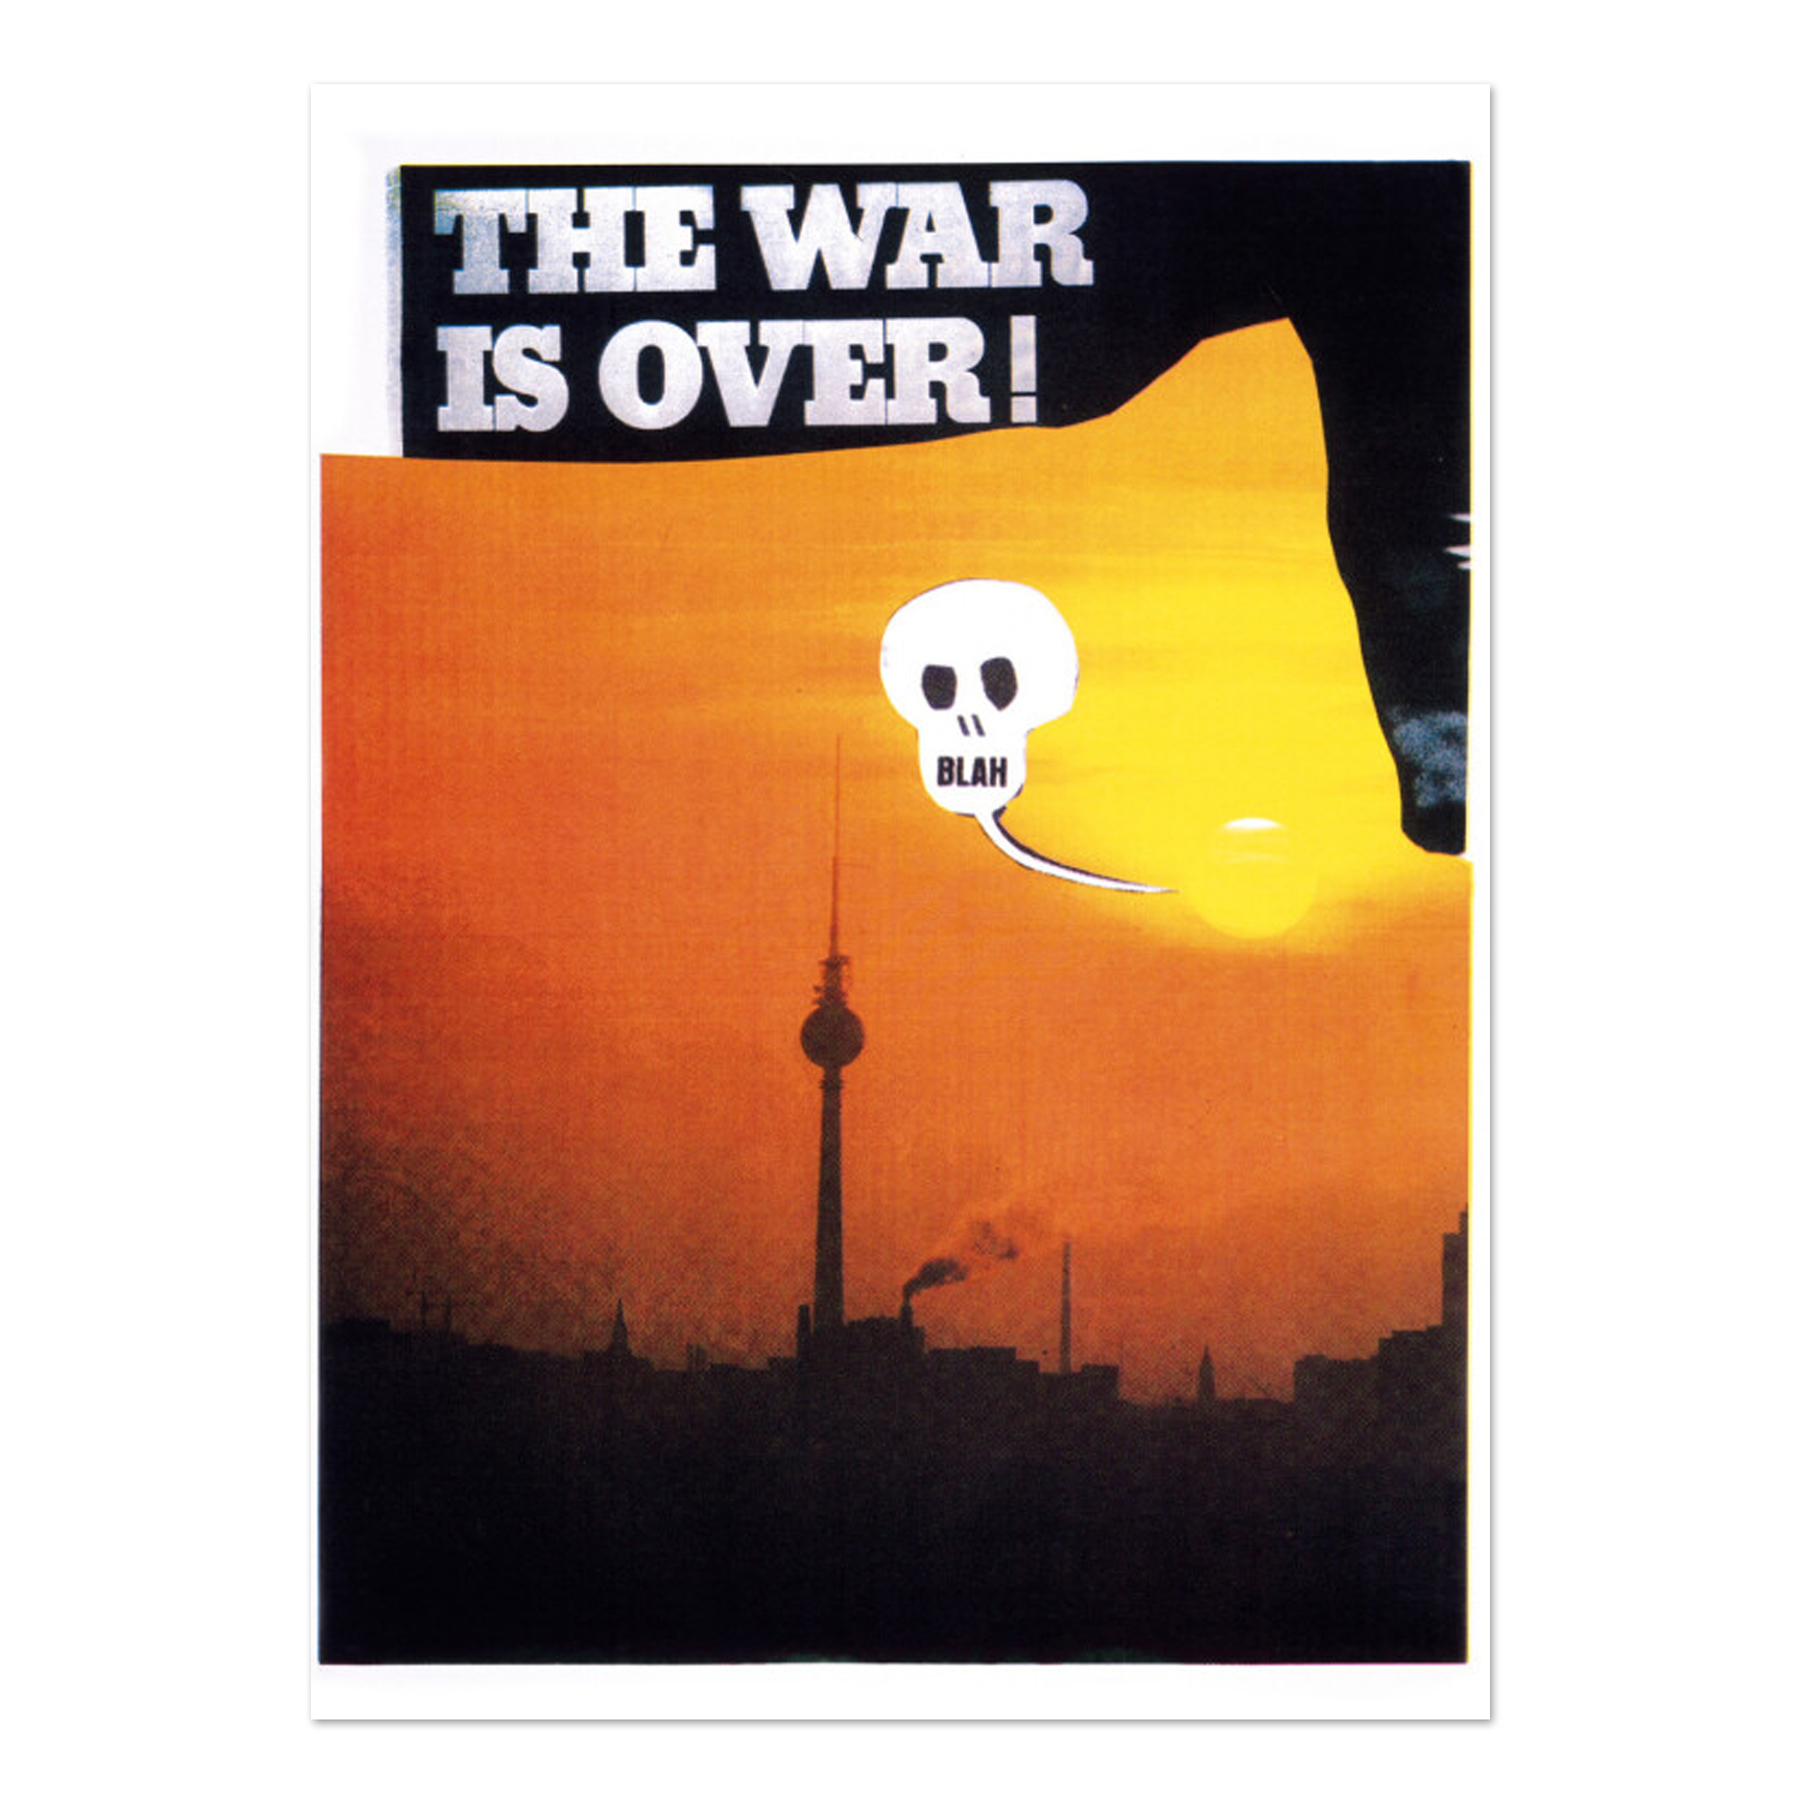 https://mltpl.art/wp-content/uploads/2020/04/Richter-Daniel_The-War-Is-Over.jpg